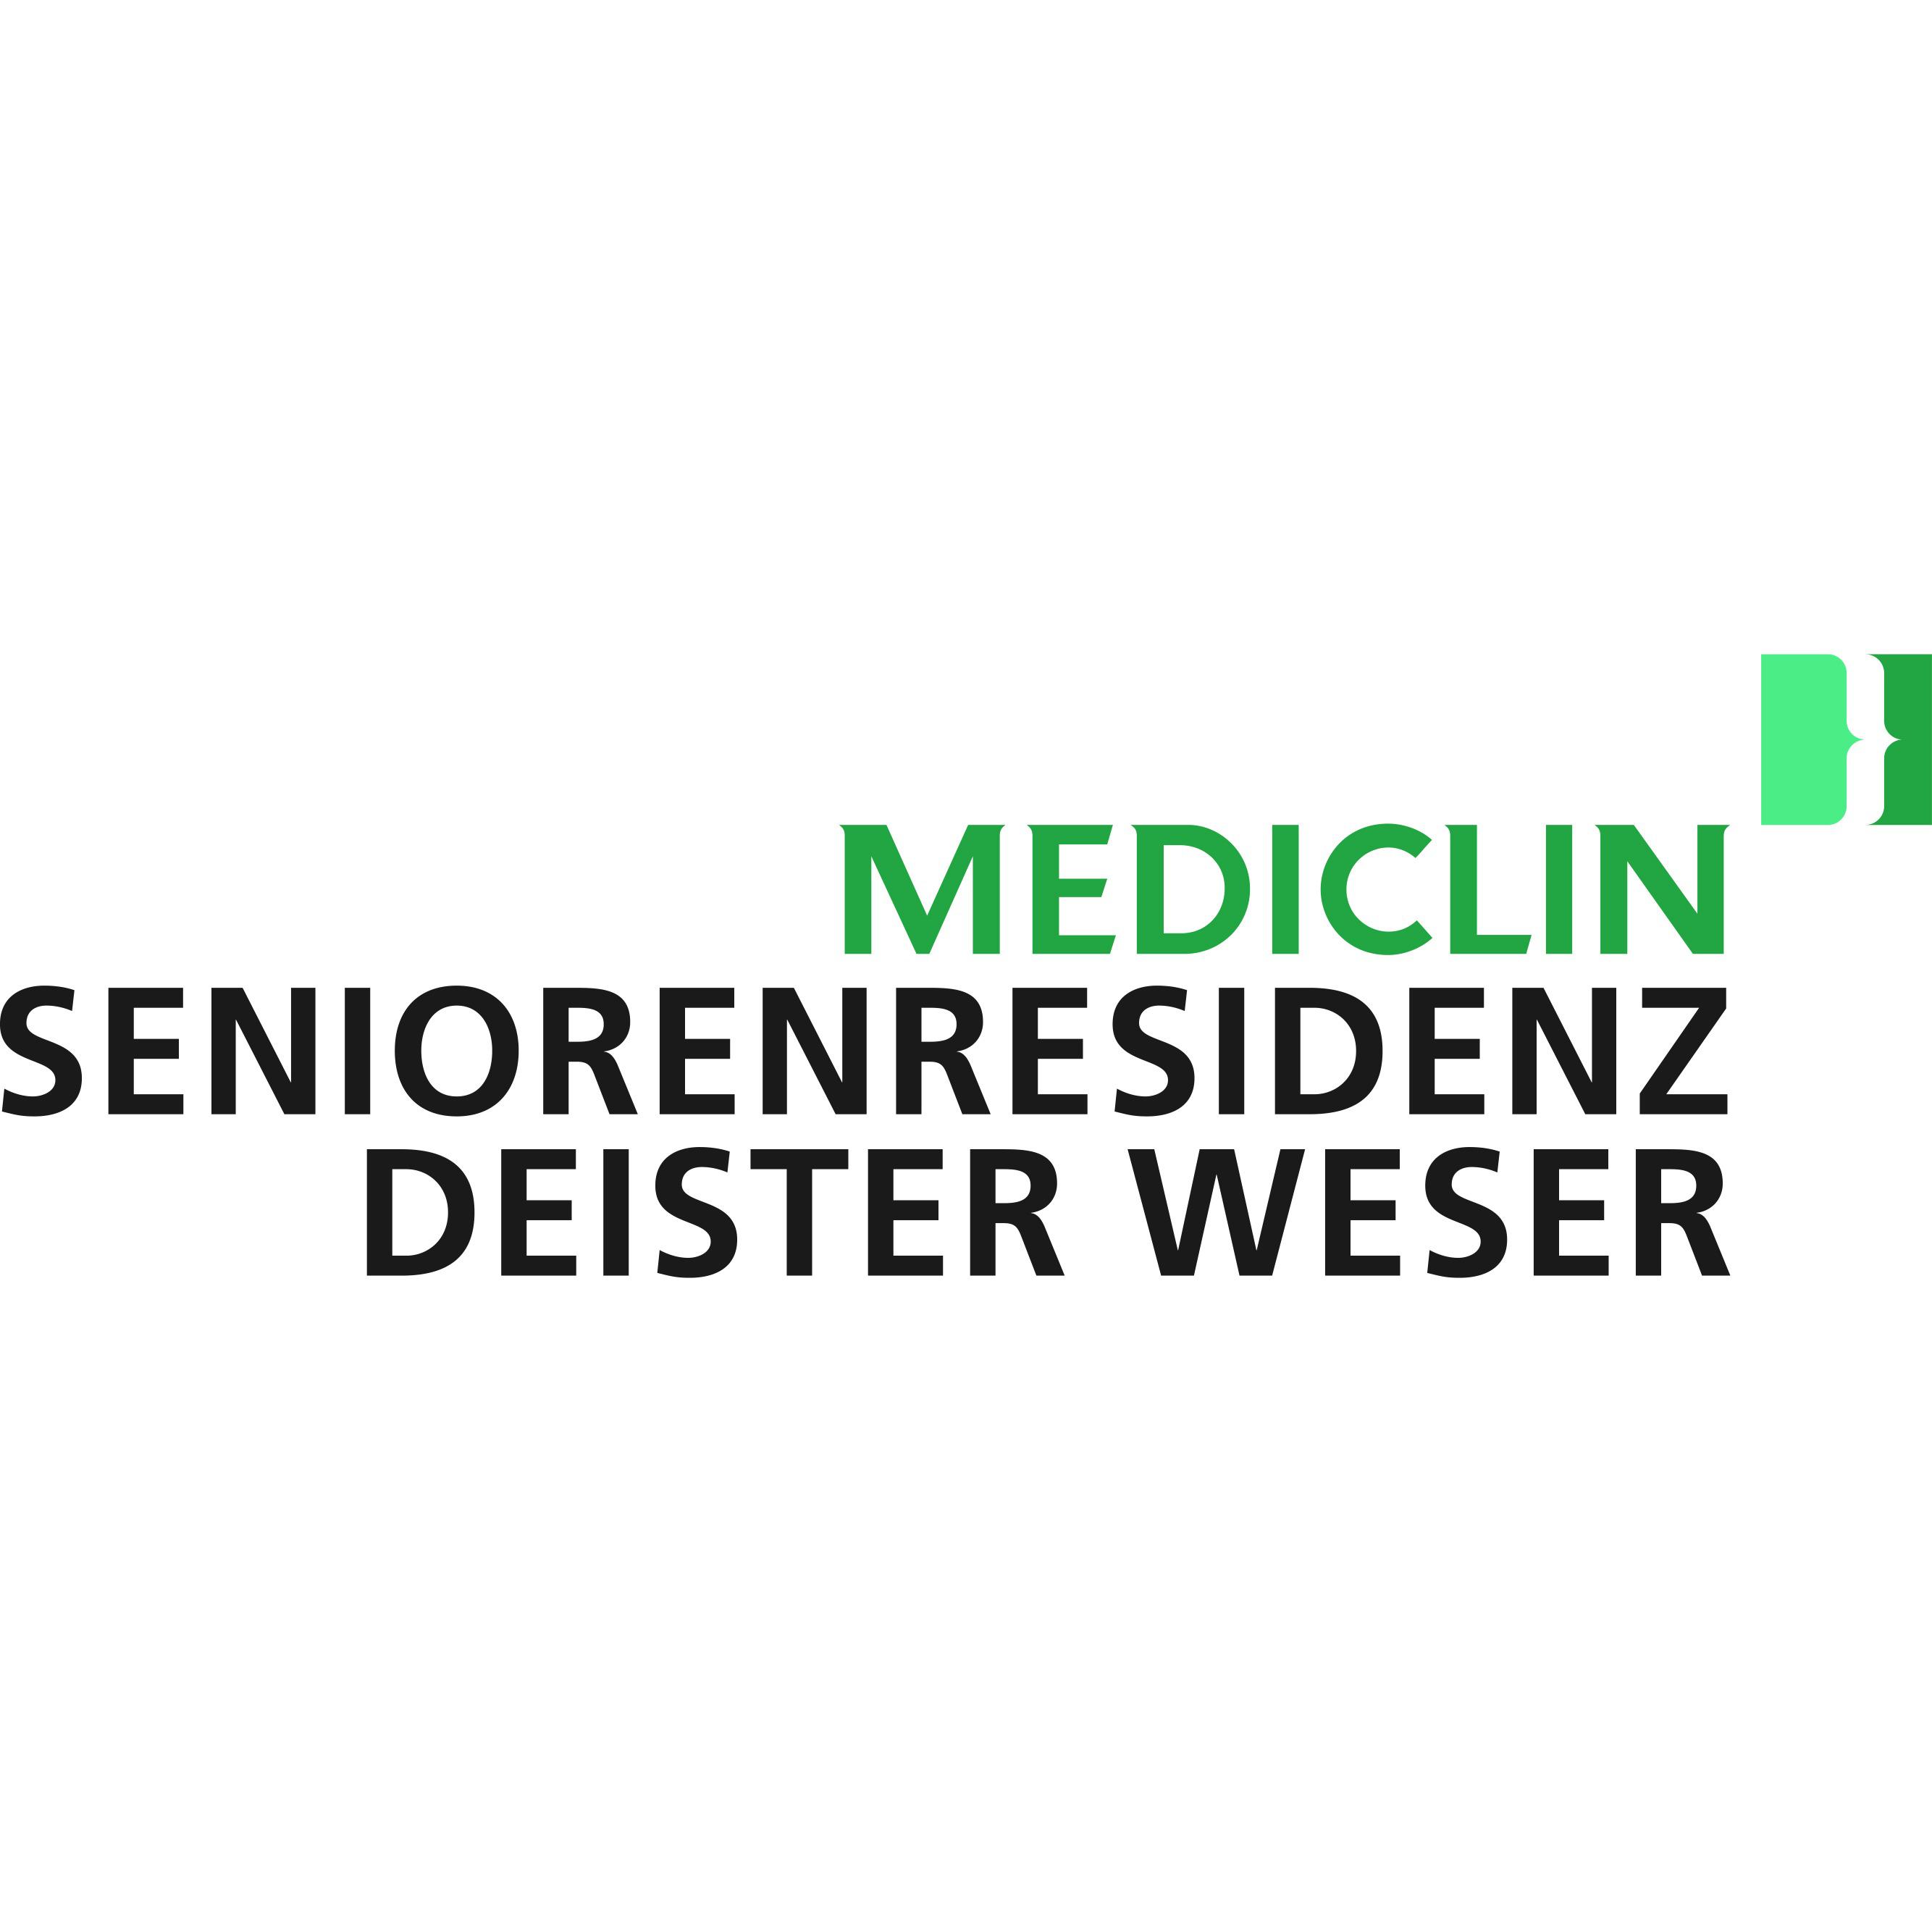 MEDICLIN Seniorenresidenz Deister Weser Bad Münder 05042 600520